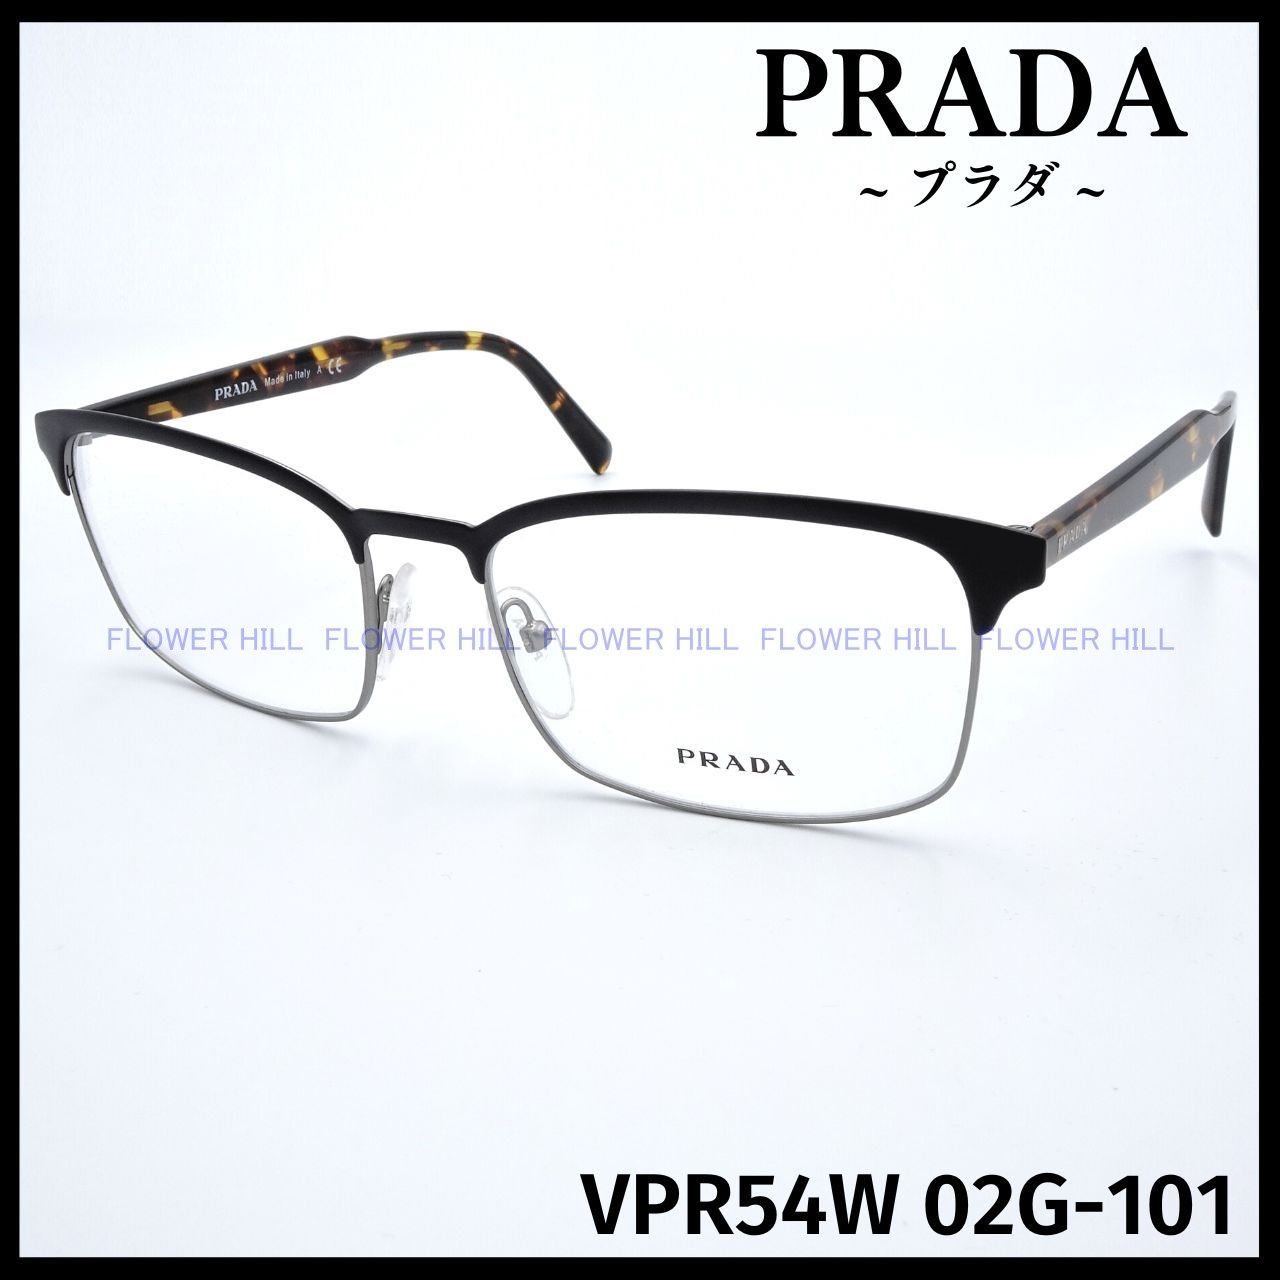 プラダ VPR54W 02G メガネ フレーム ブラック ハバナ イタリア製